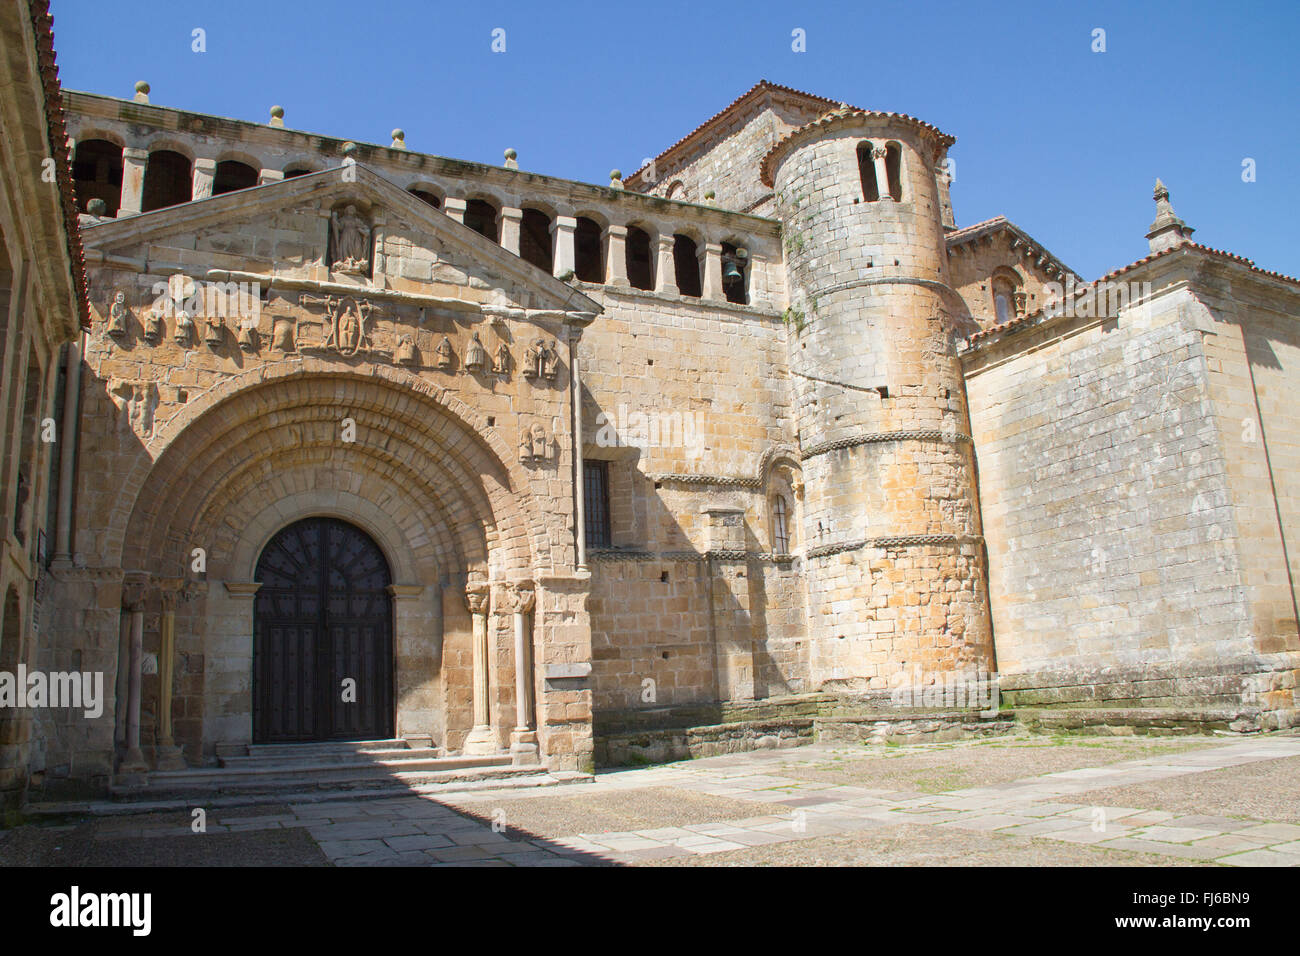 Collégiale de Santa Juliana est une église romane et de pèlerinage du village de Santillana del Mar, Espagne Banque D'Images